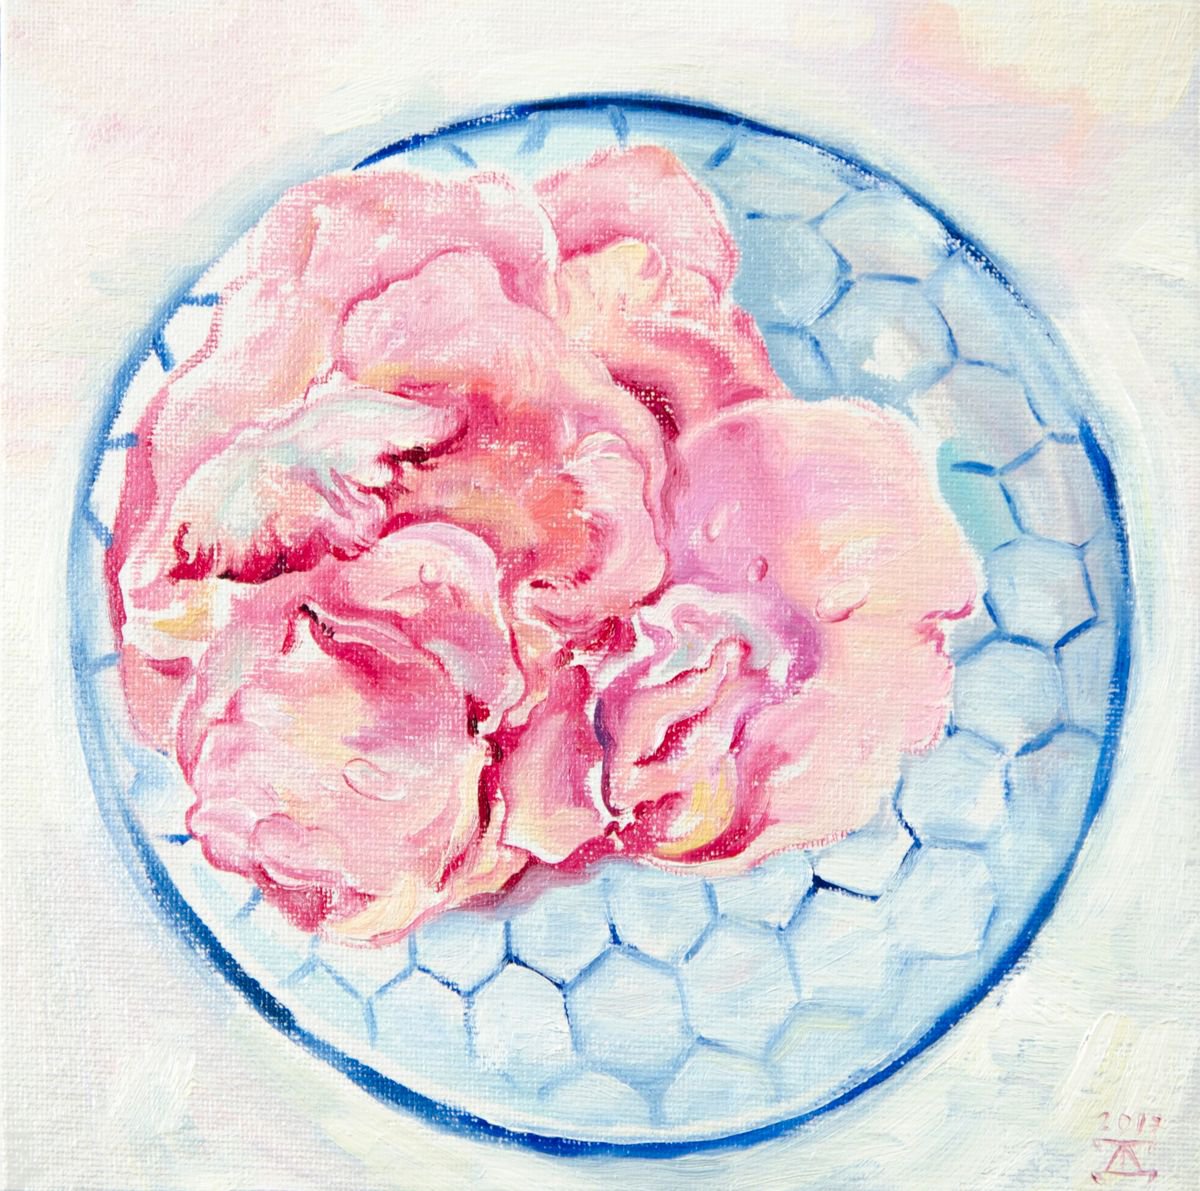 The rose petals by Daria Galinski